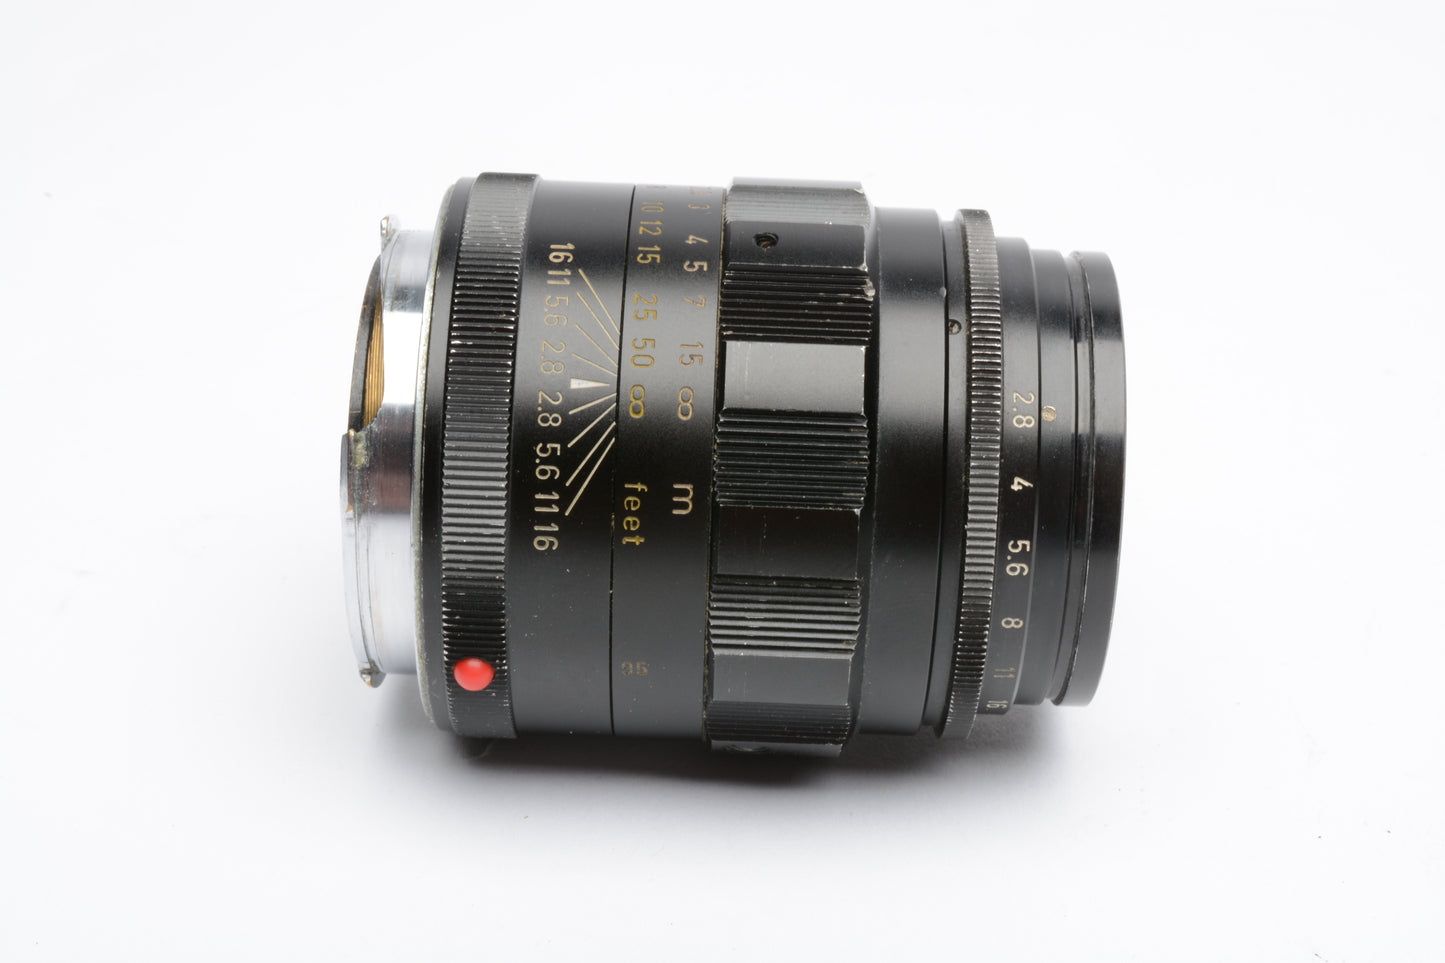 Leica Leitz 90mm F2 Tele-Elmarit Lens V.I black lens, very sharp!